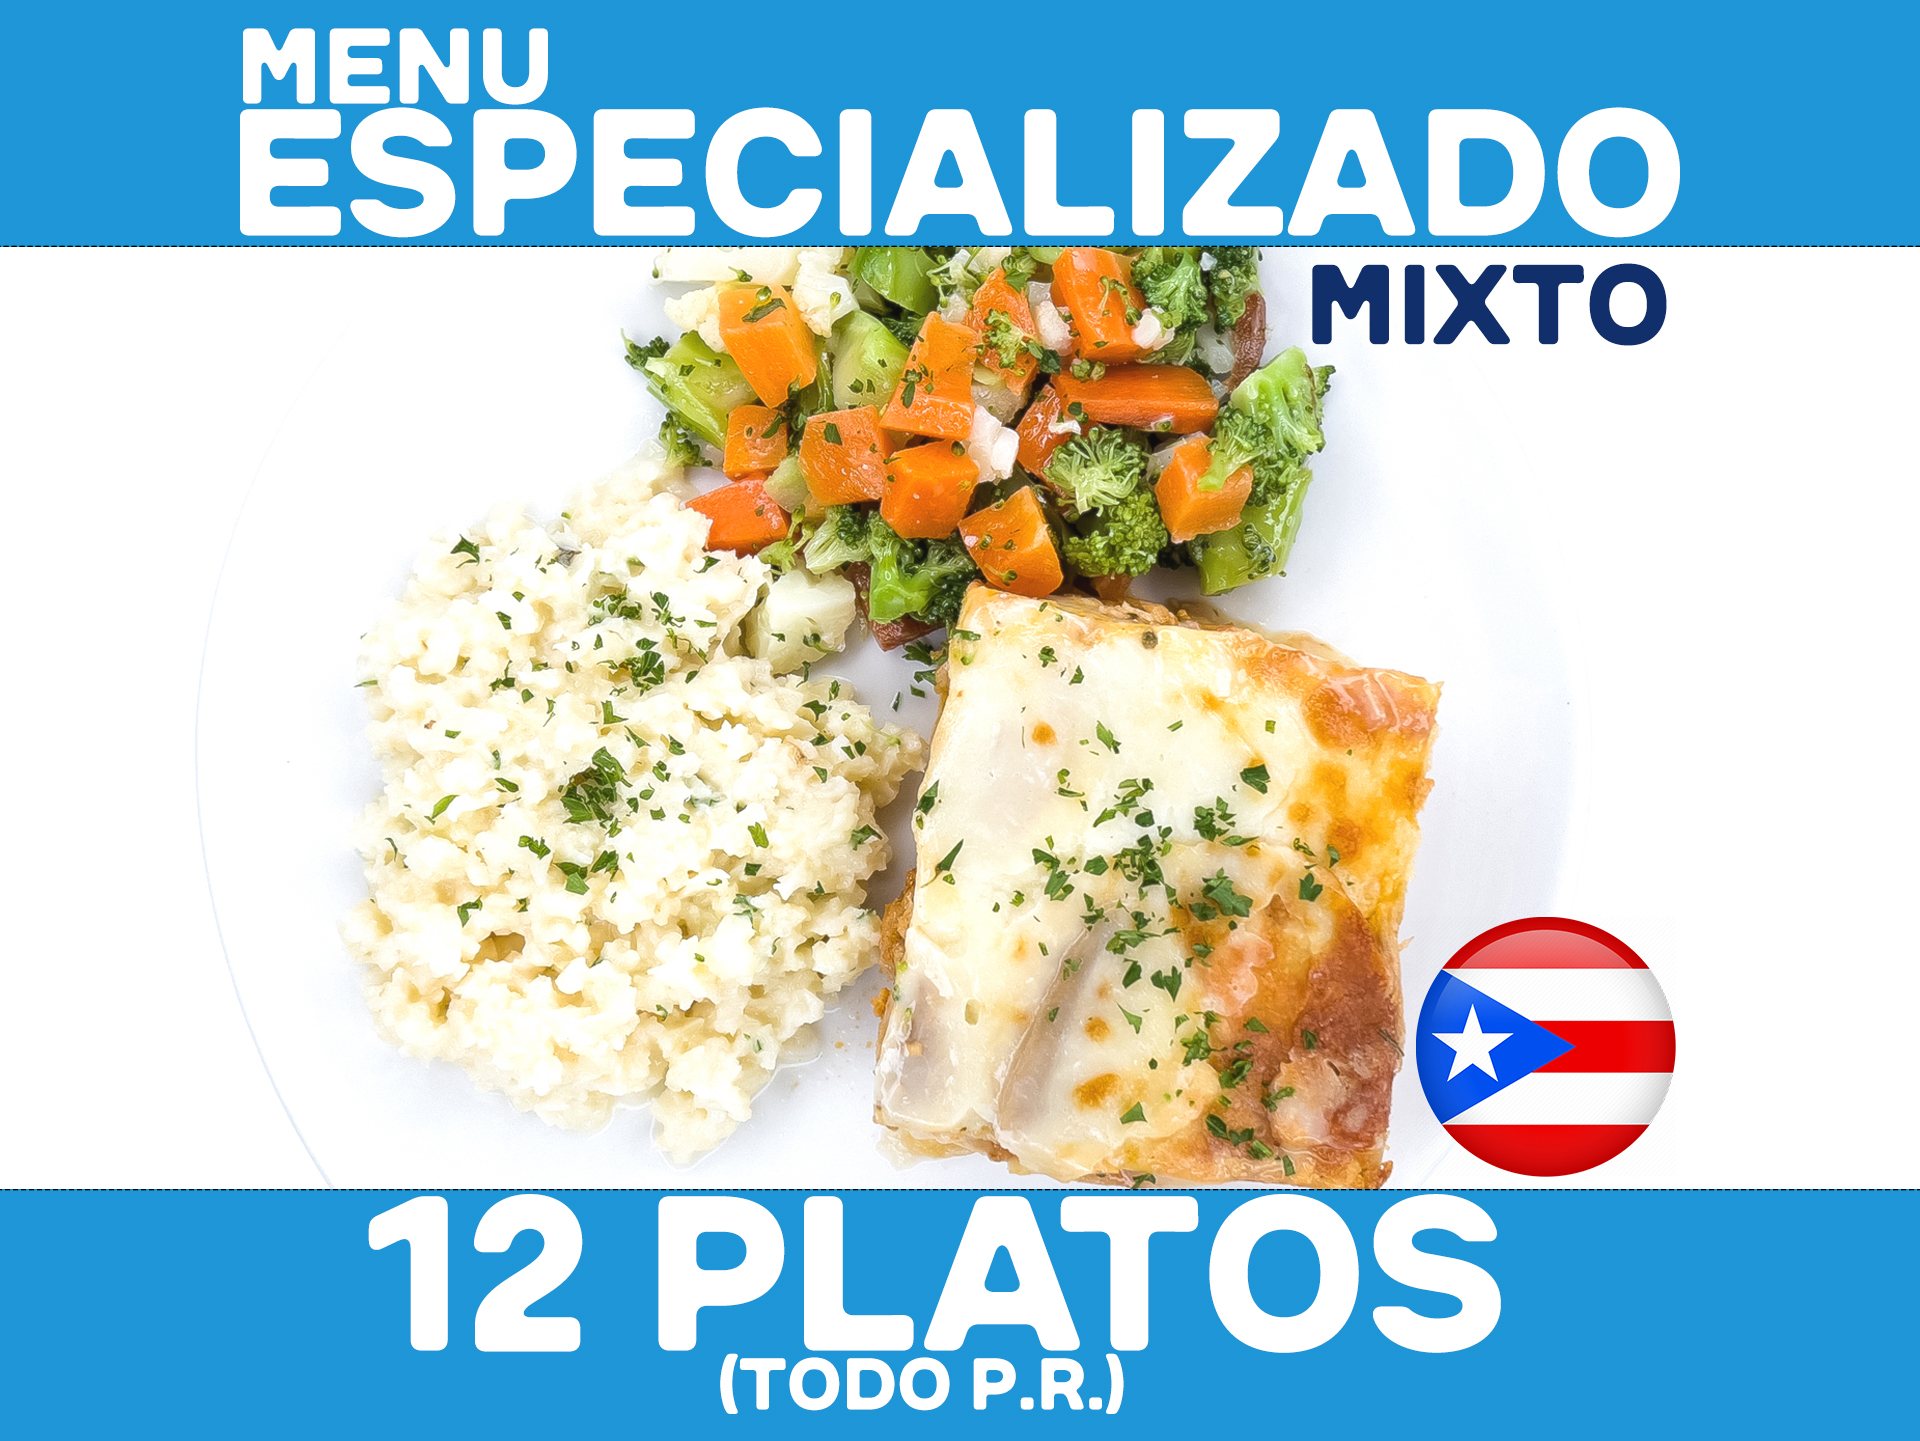 12 Platos - MENU ESPECIALIZADO MIXTO (desde $8.99 - 6 Value / $11.99 - 6 Premium / por plato refrigerado)